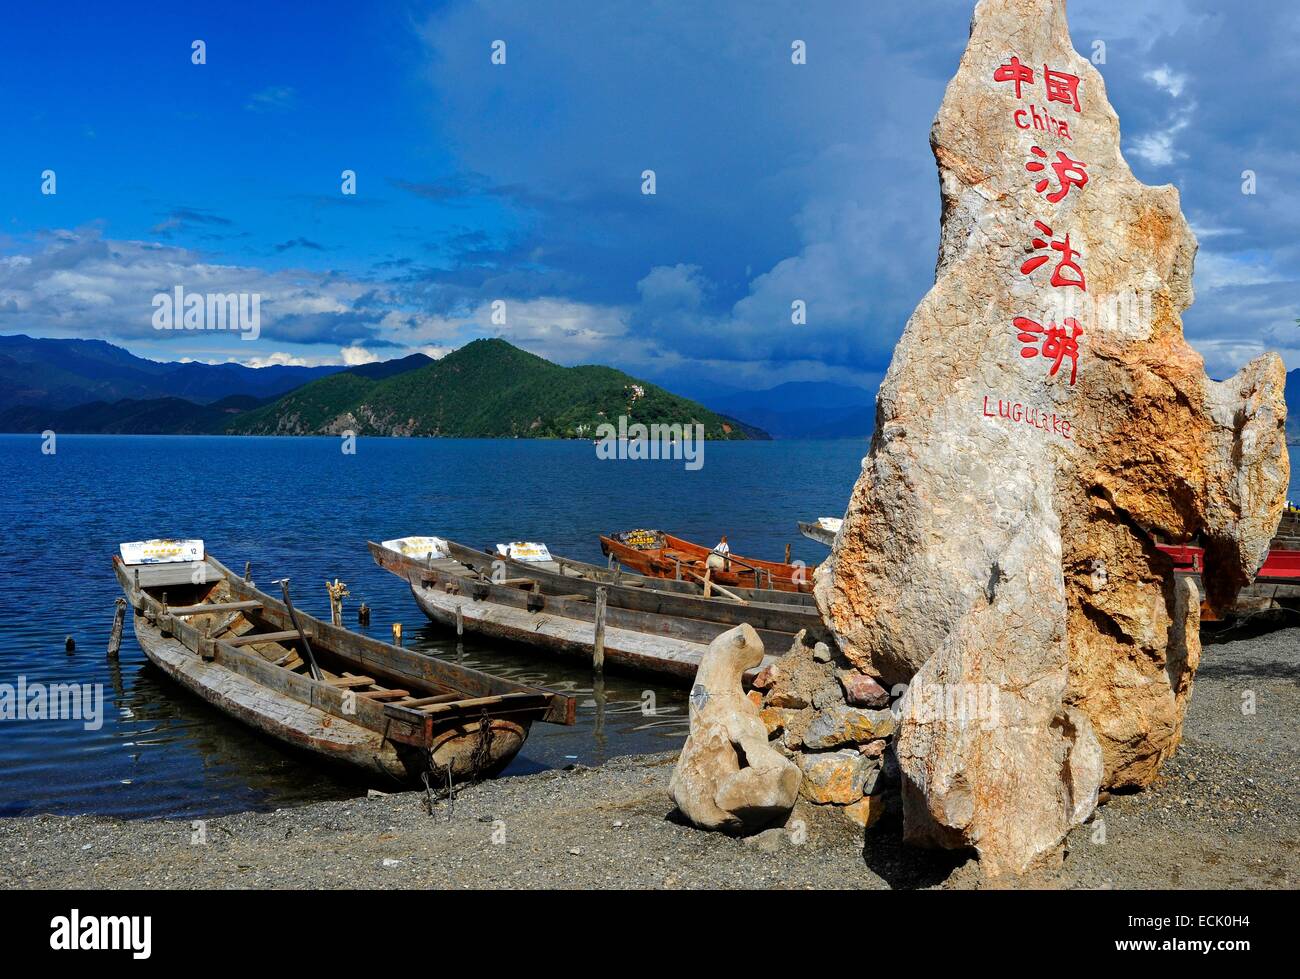 China, Yunnan Province, Lugu Lake Stock Photo